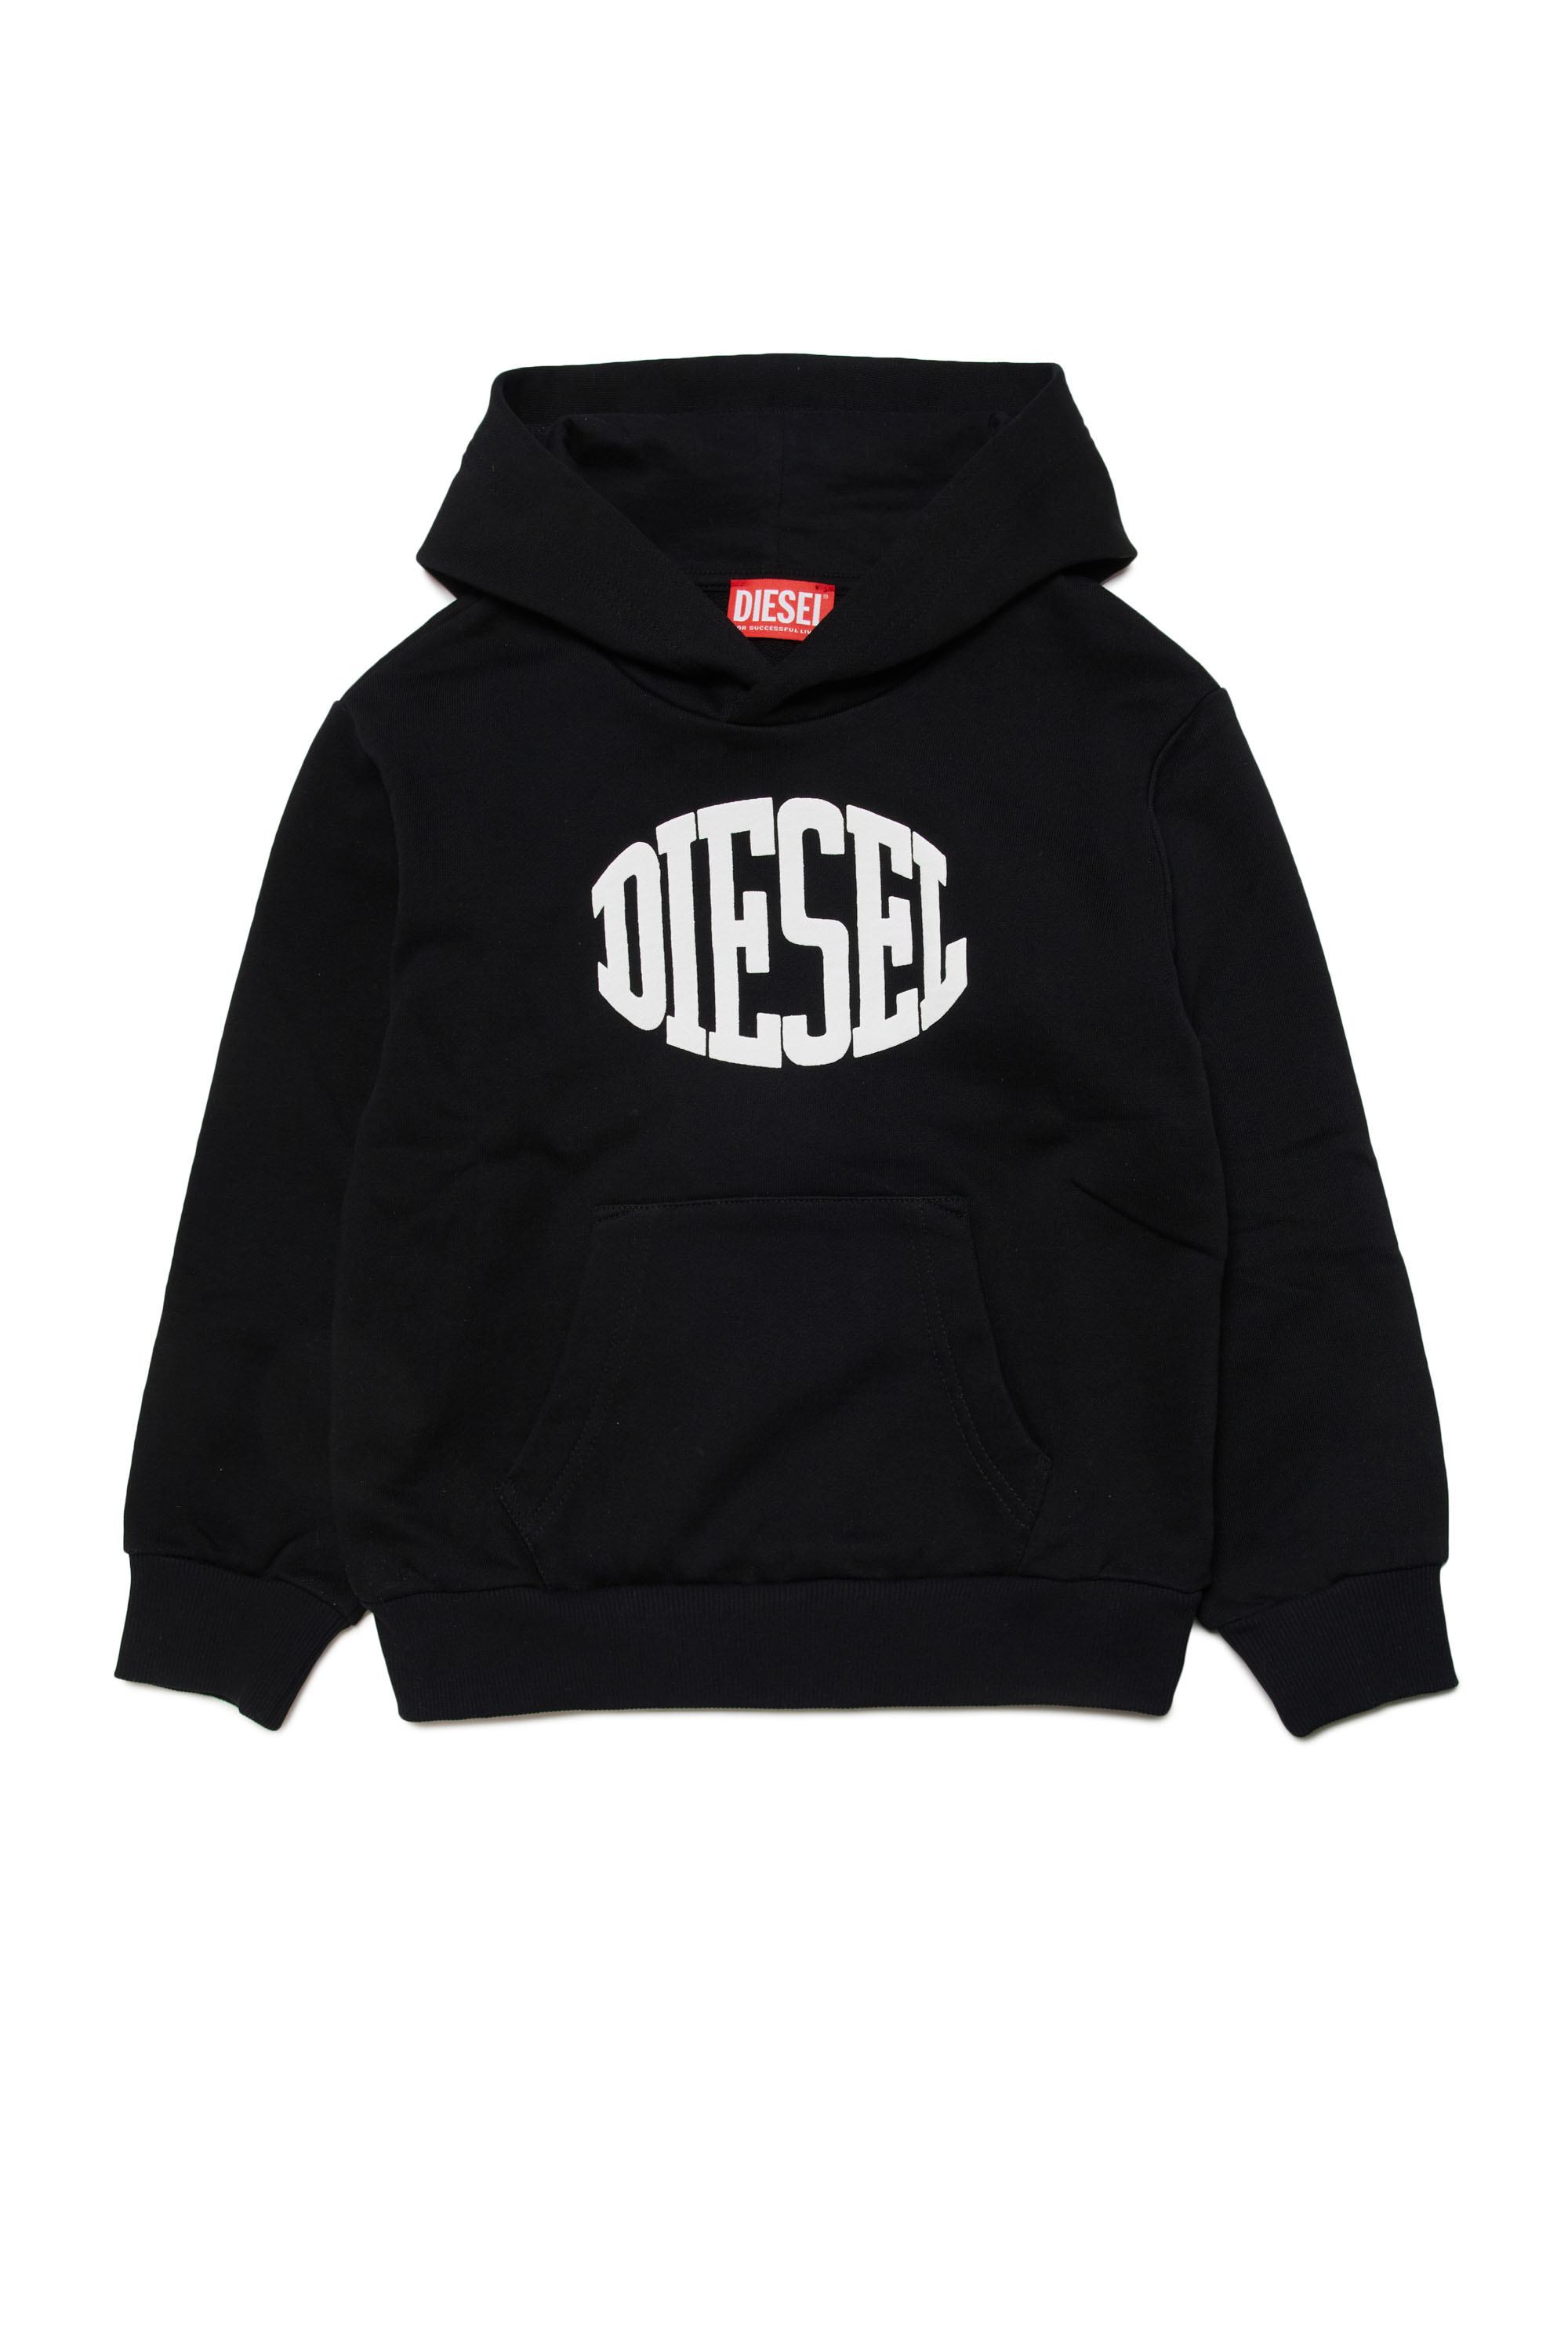 Diesel - SBOLC OVER, Man Cotton hoodie with Diesel logo in Black - Image 1